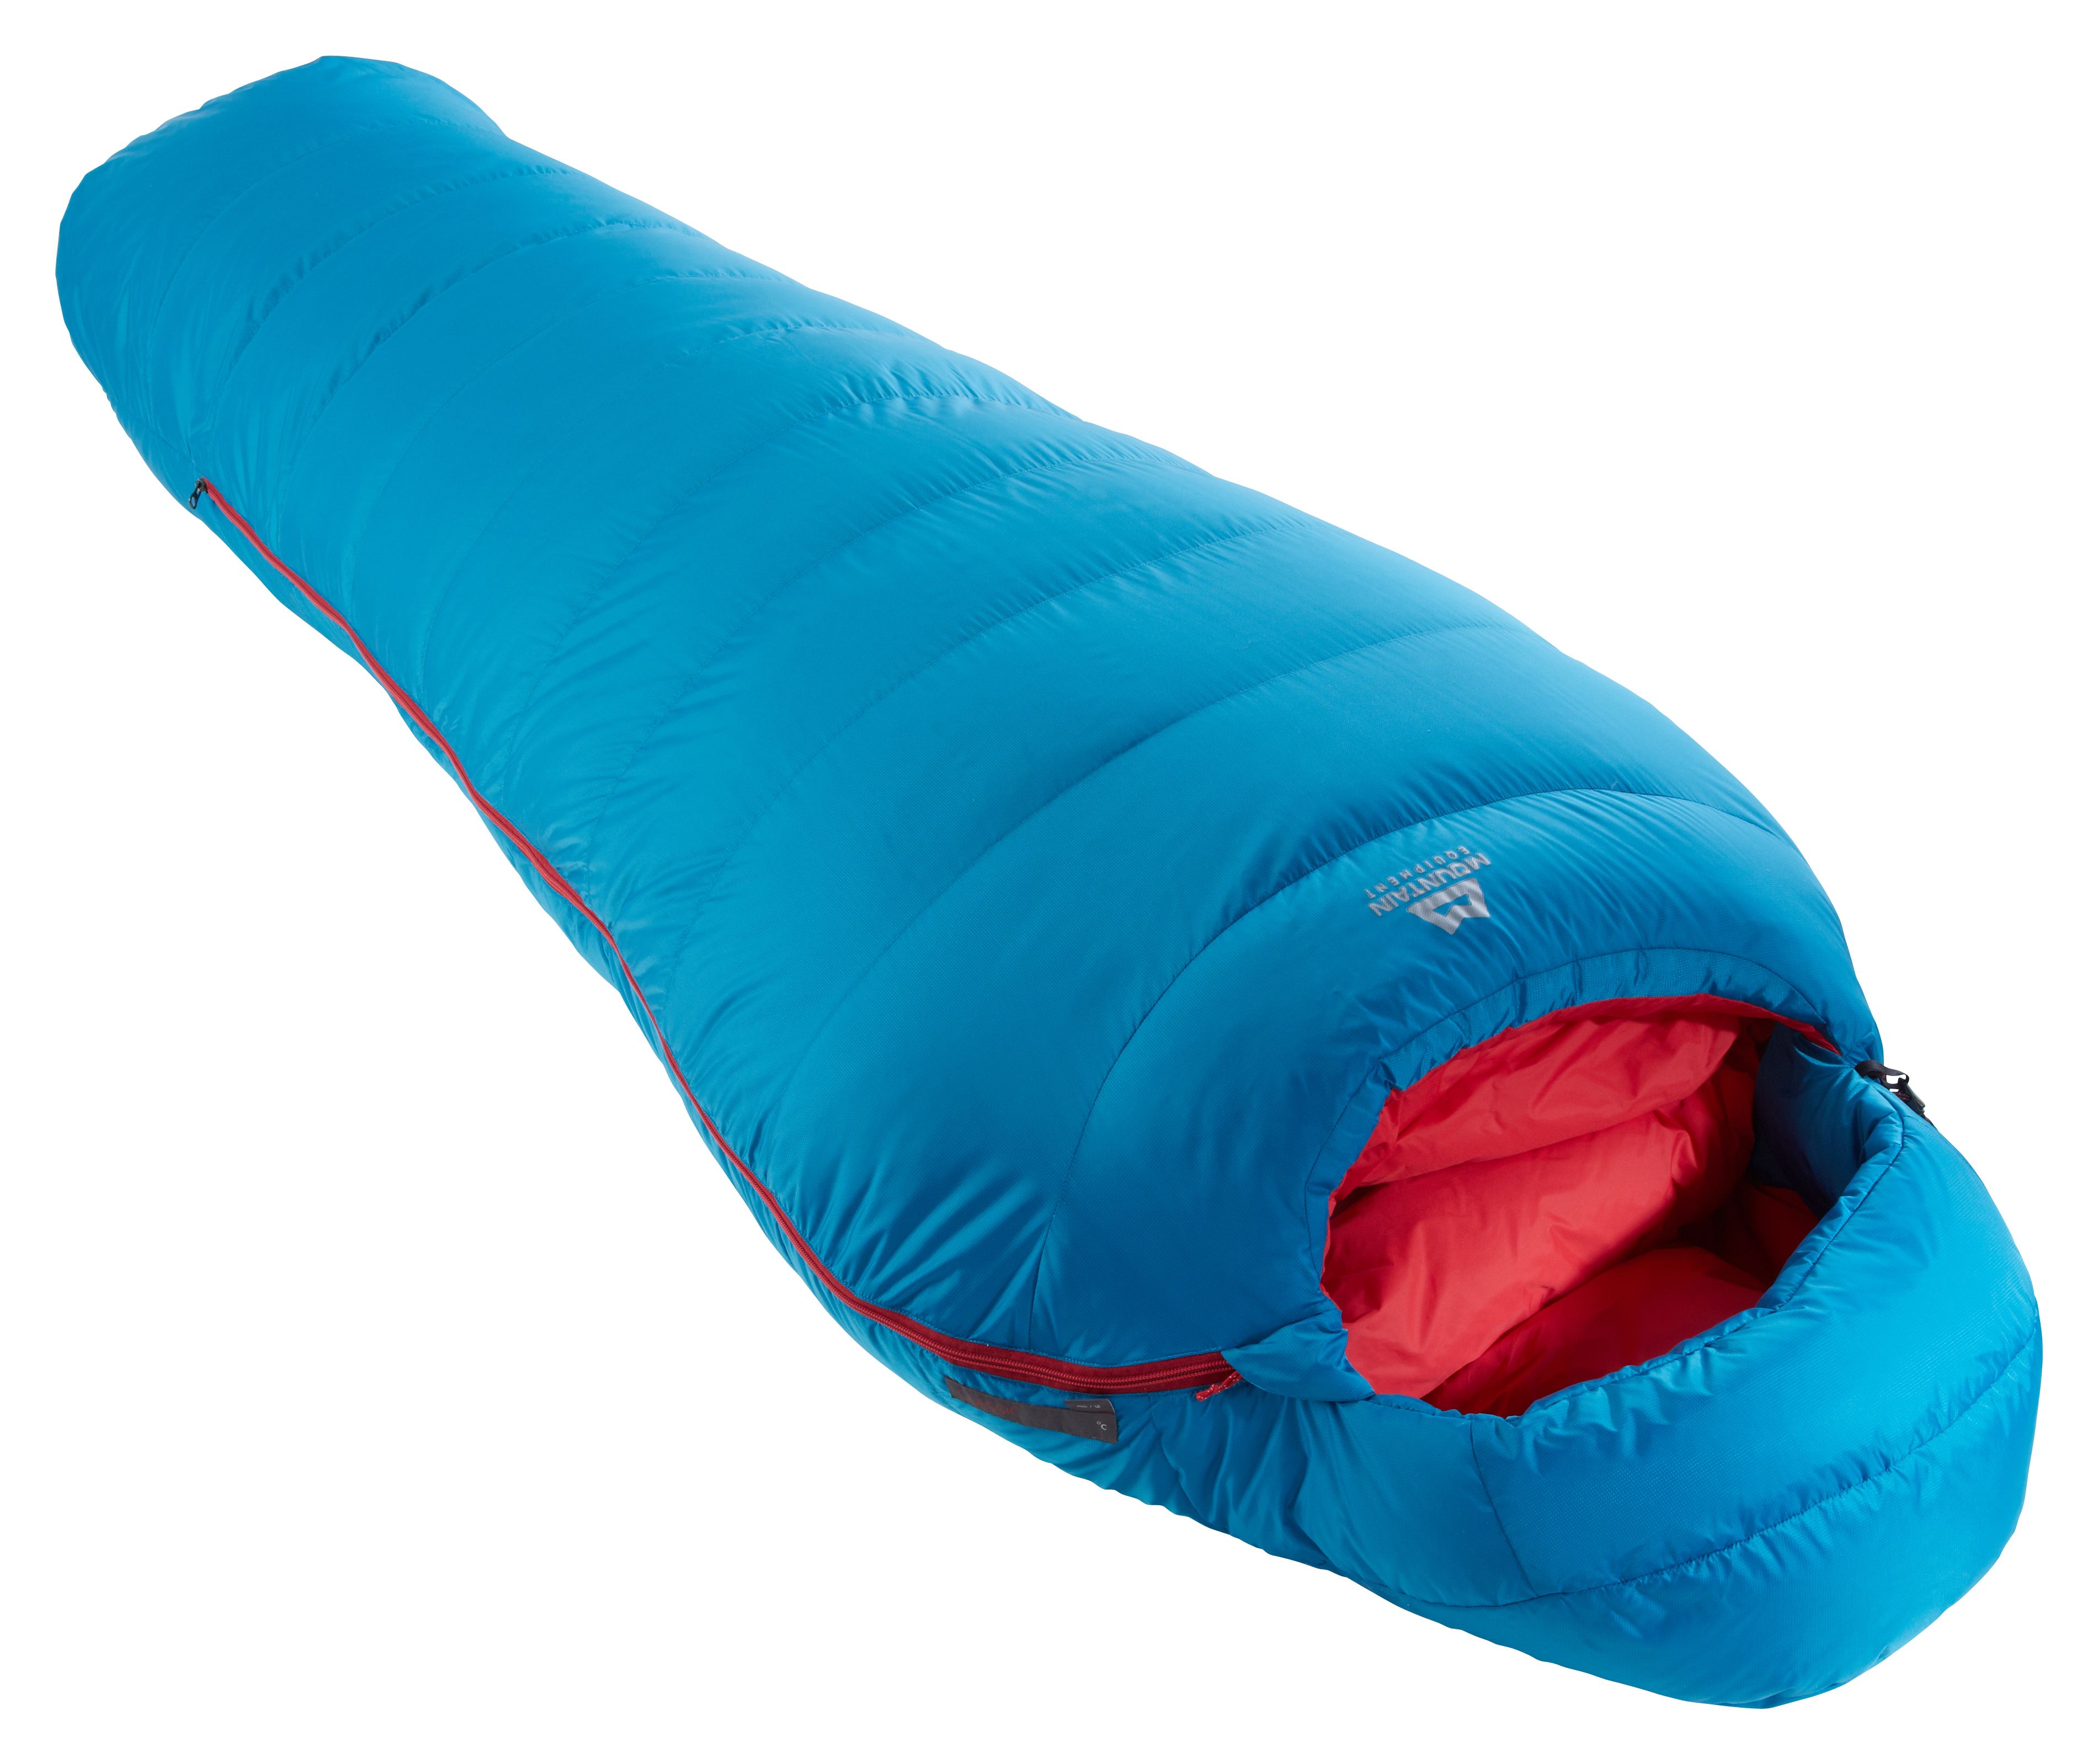 Mountain Equipment Classic 750 - Down sleeping bag - Women's